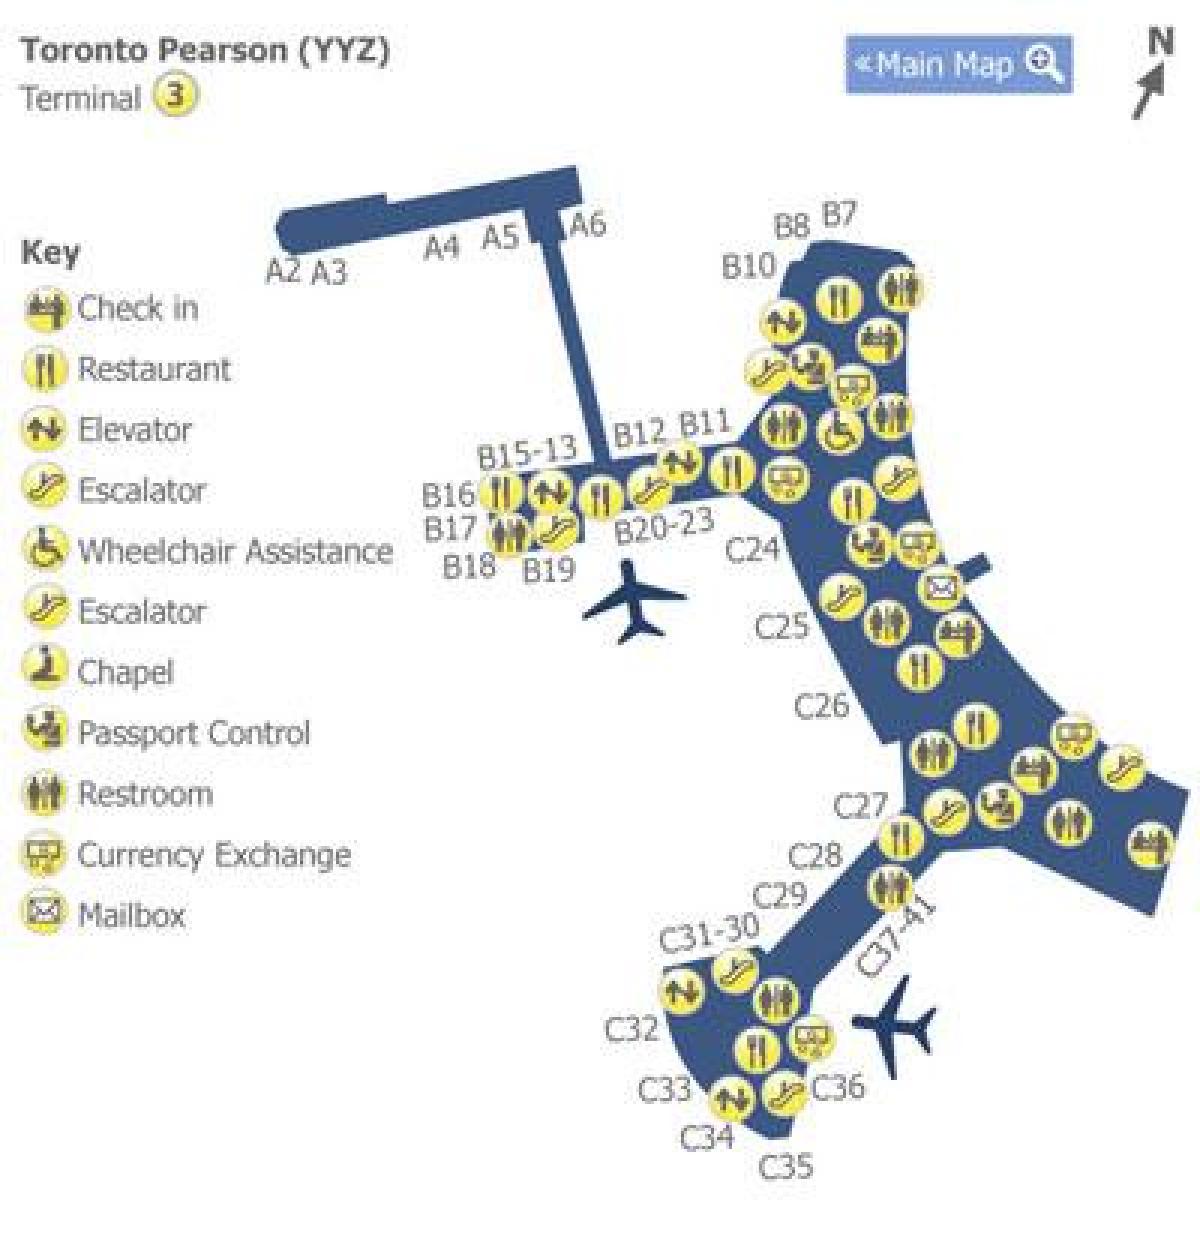 Zemljevid Torontu Pearson letališki terminal 3